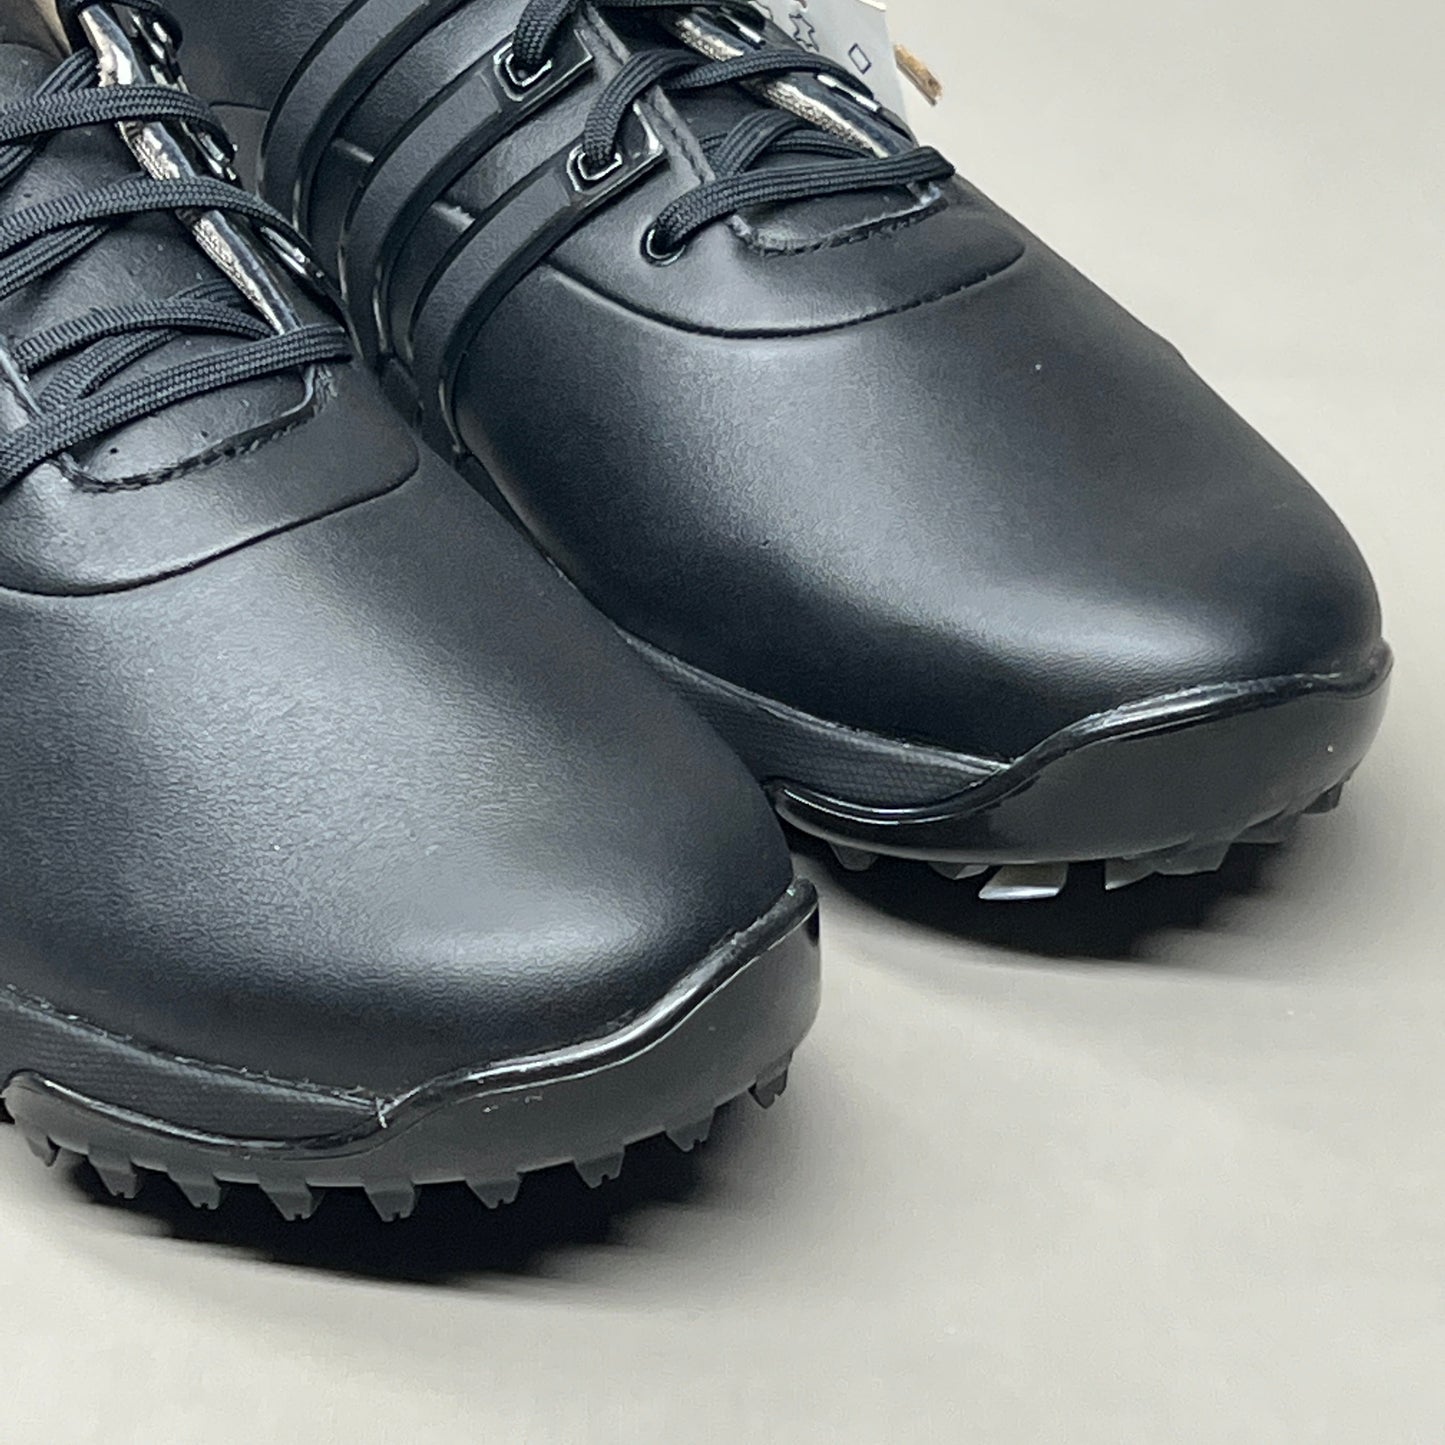 ADIDAS Golf Shoes TOUR360 22 Leather Men's Sz 10 Black / Iron Metallic GZ3158 (New)